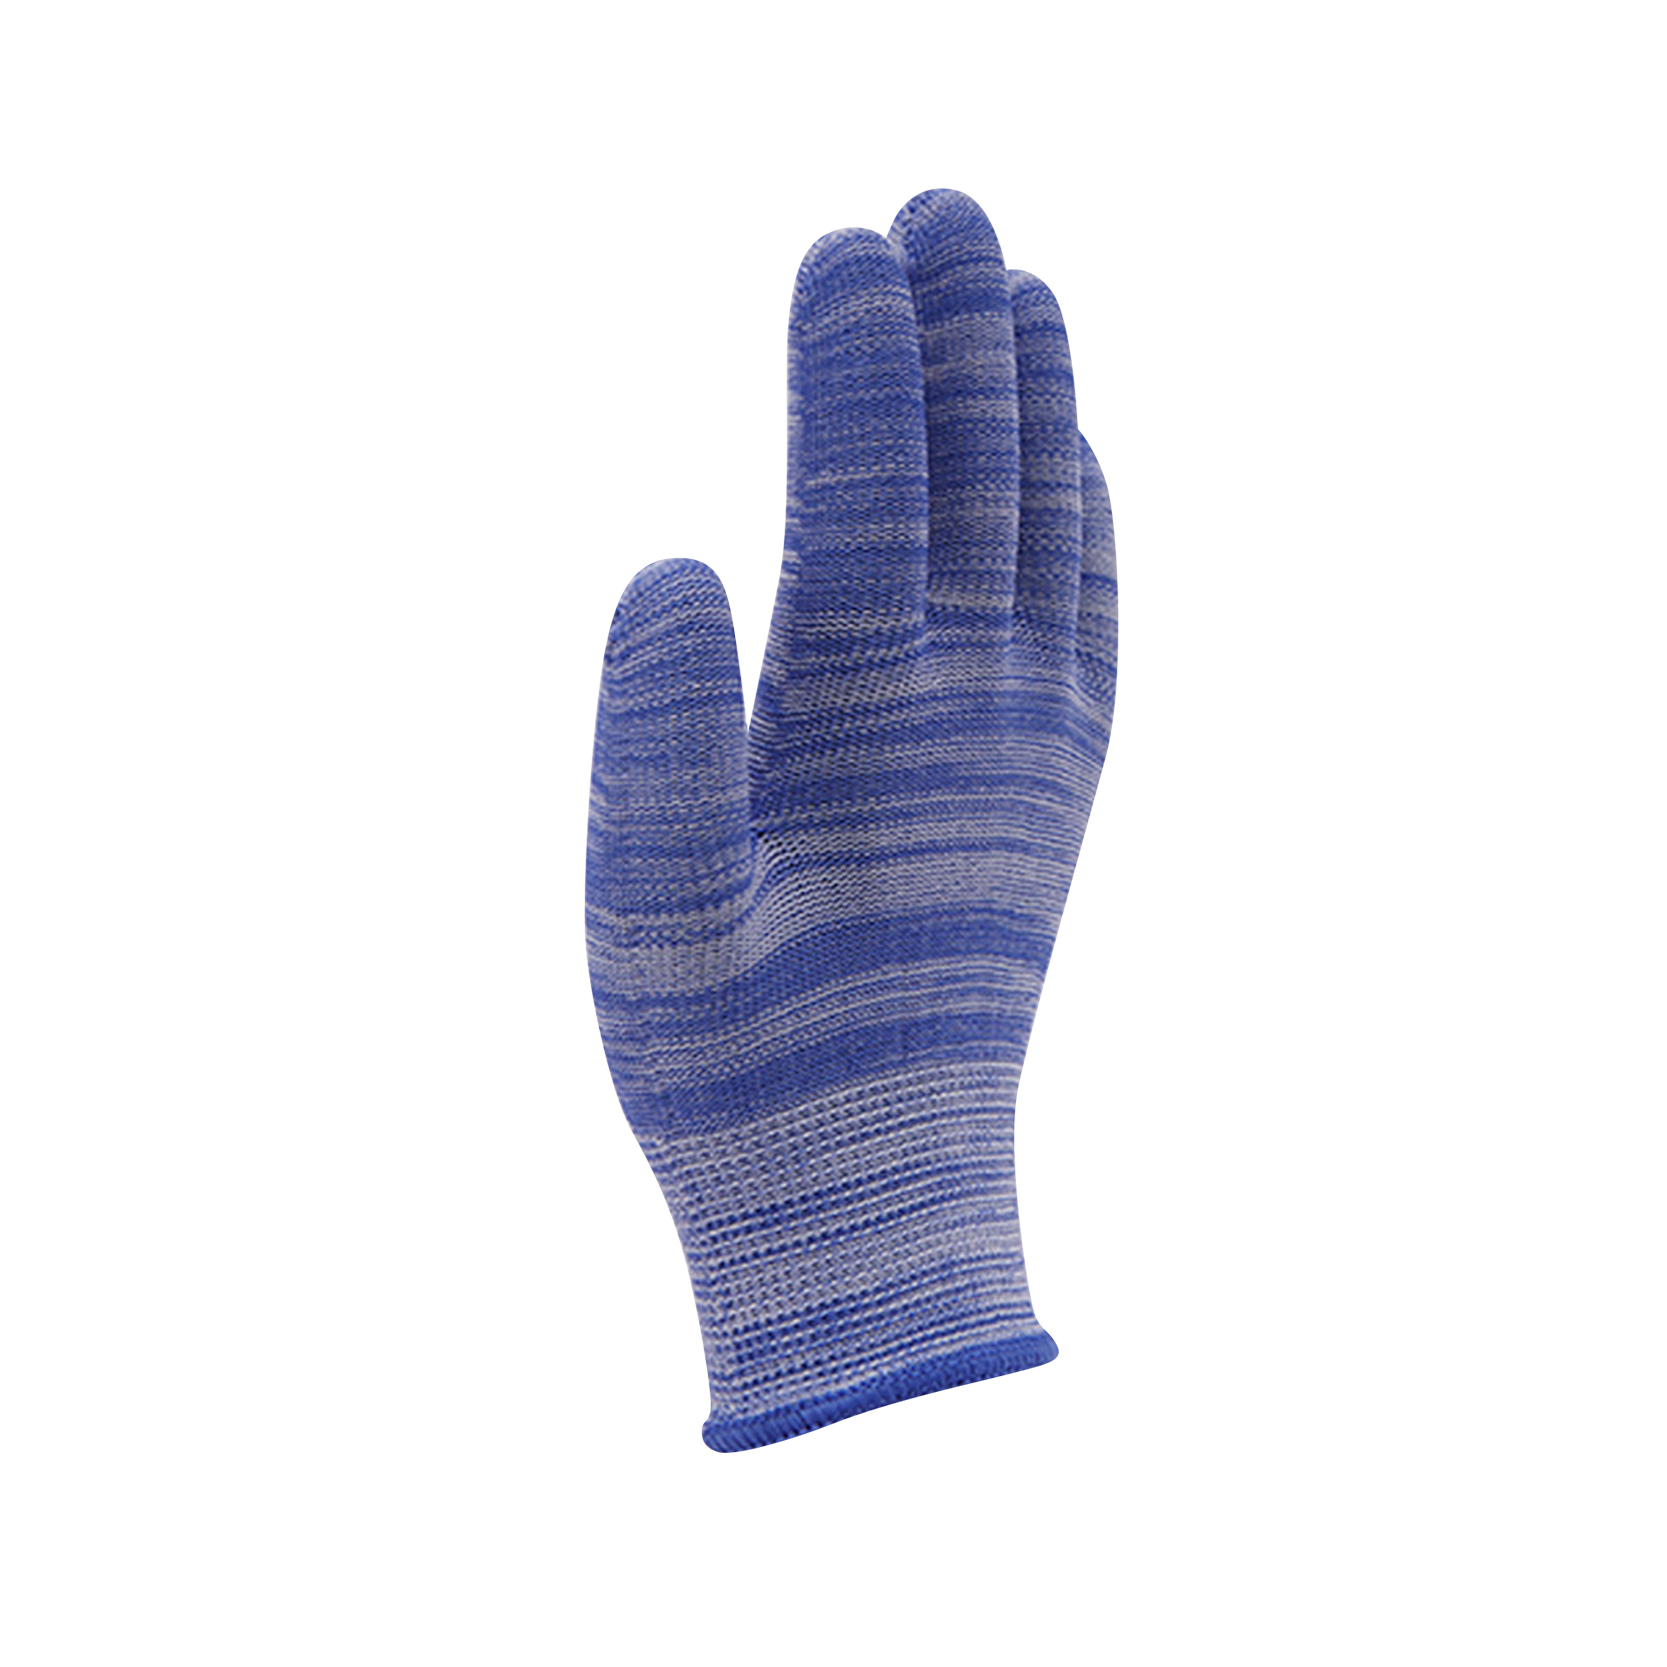 Вишебојне заштитне плетене рукавице.Обичне рукавице за тежину.Плетене памучне полиестерске рукавице за генерал